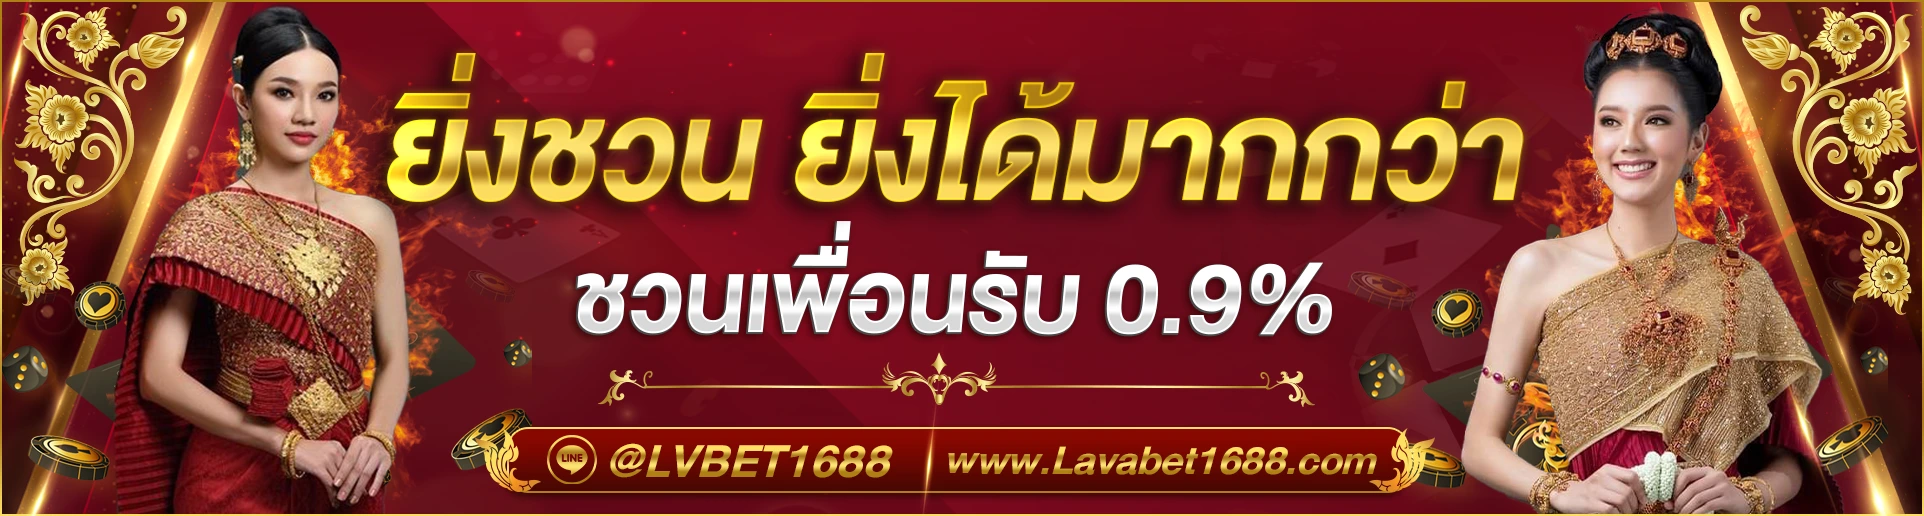 Große Gewinne mit Lavabet1688 Slot Online: Tipps und Strategien für 